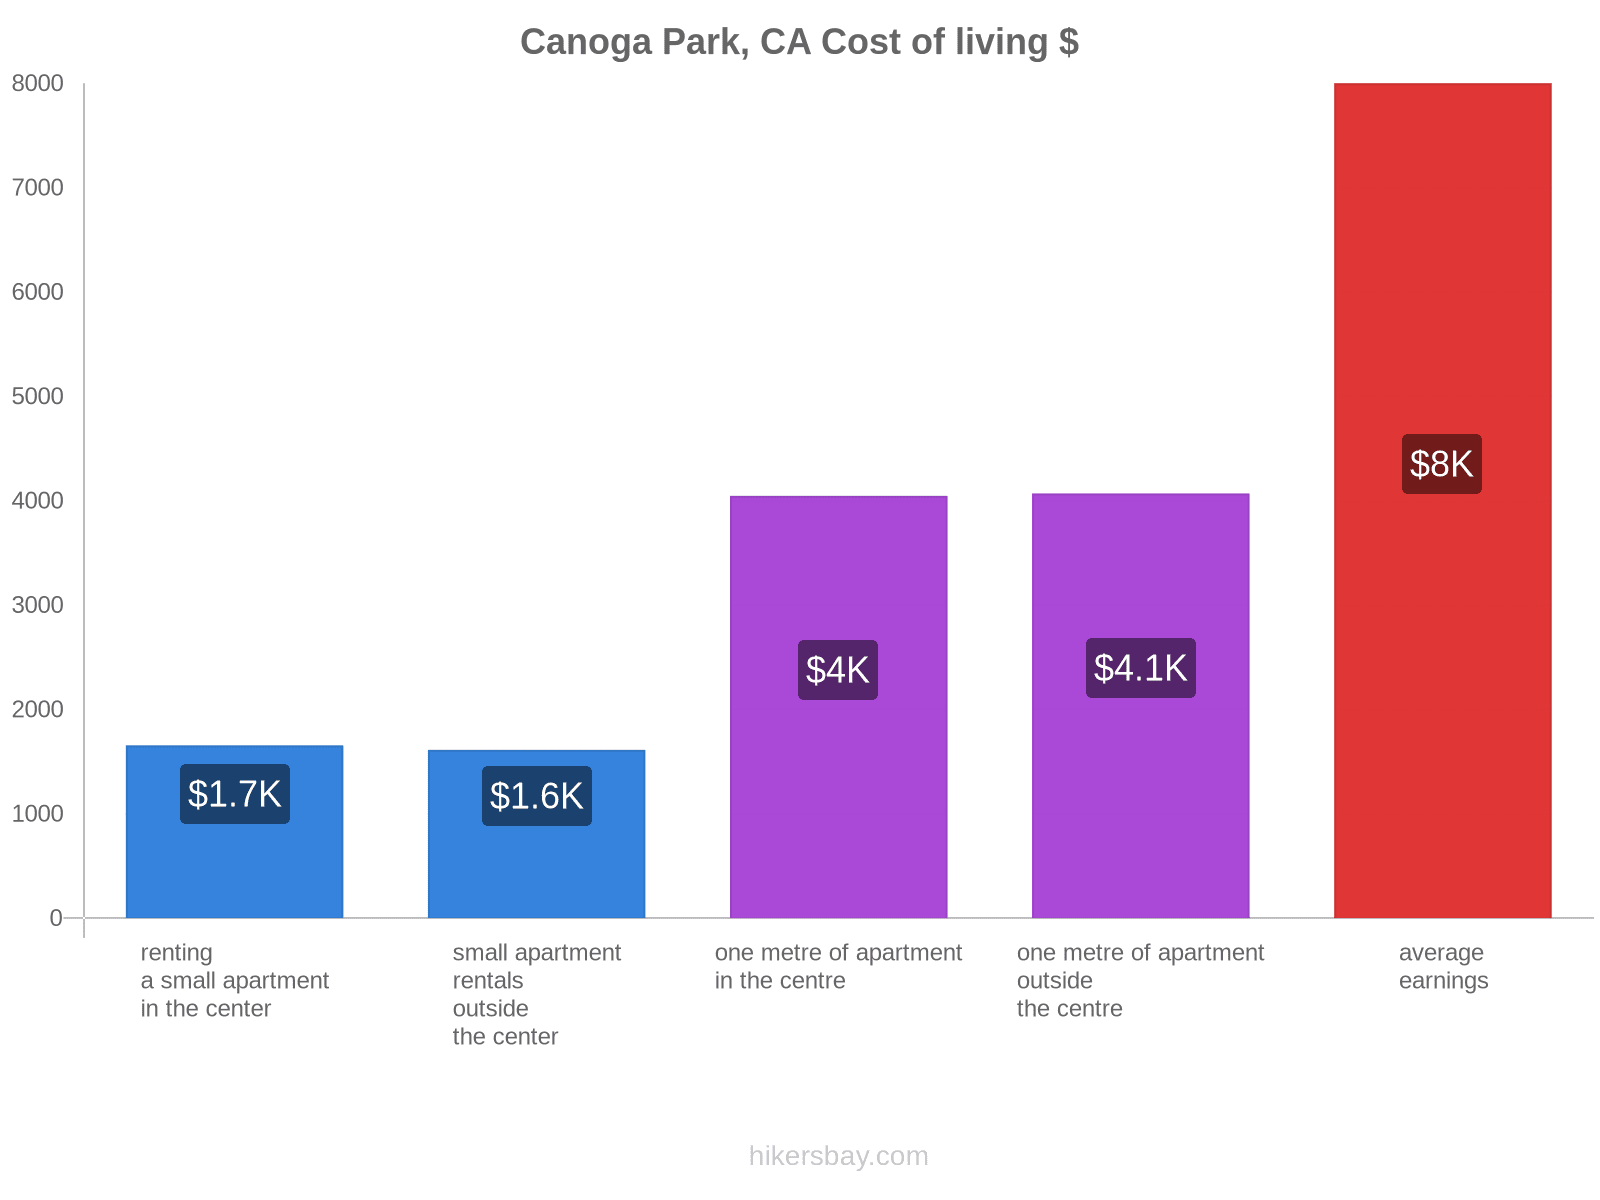 Canoga Park, CA cost of living hikersbay.com